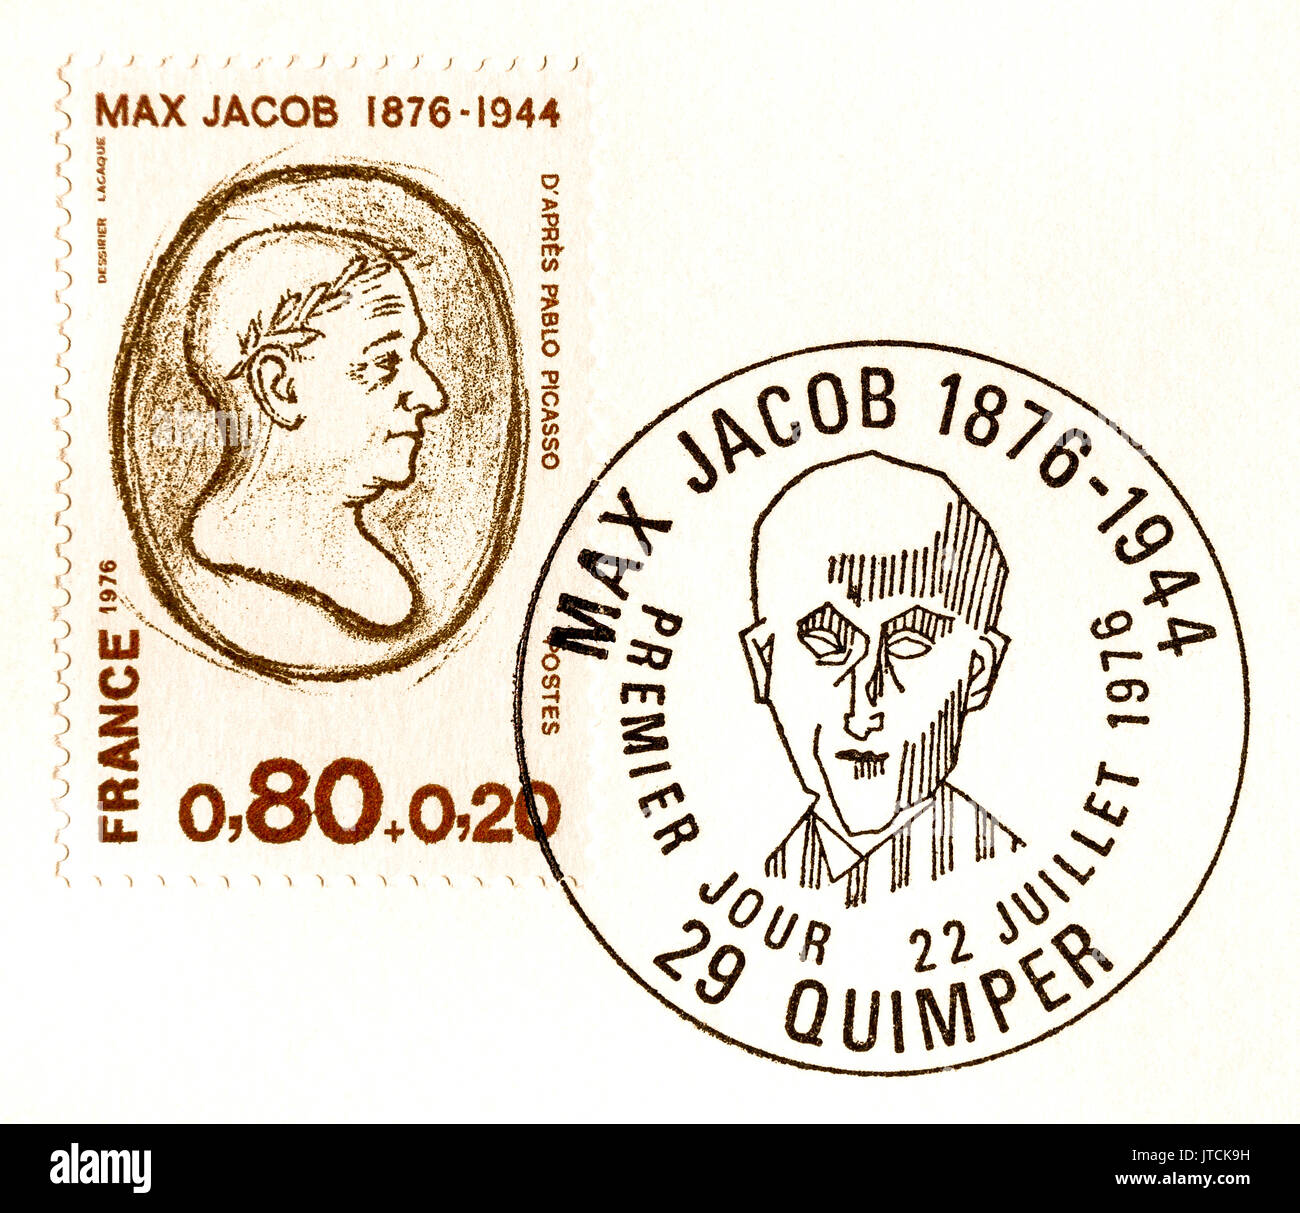 Französische Stempel und spezielle 1. tag Poststempel von Max Jacob. Stockfoto